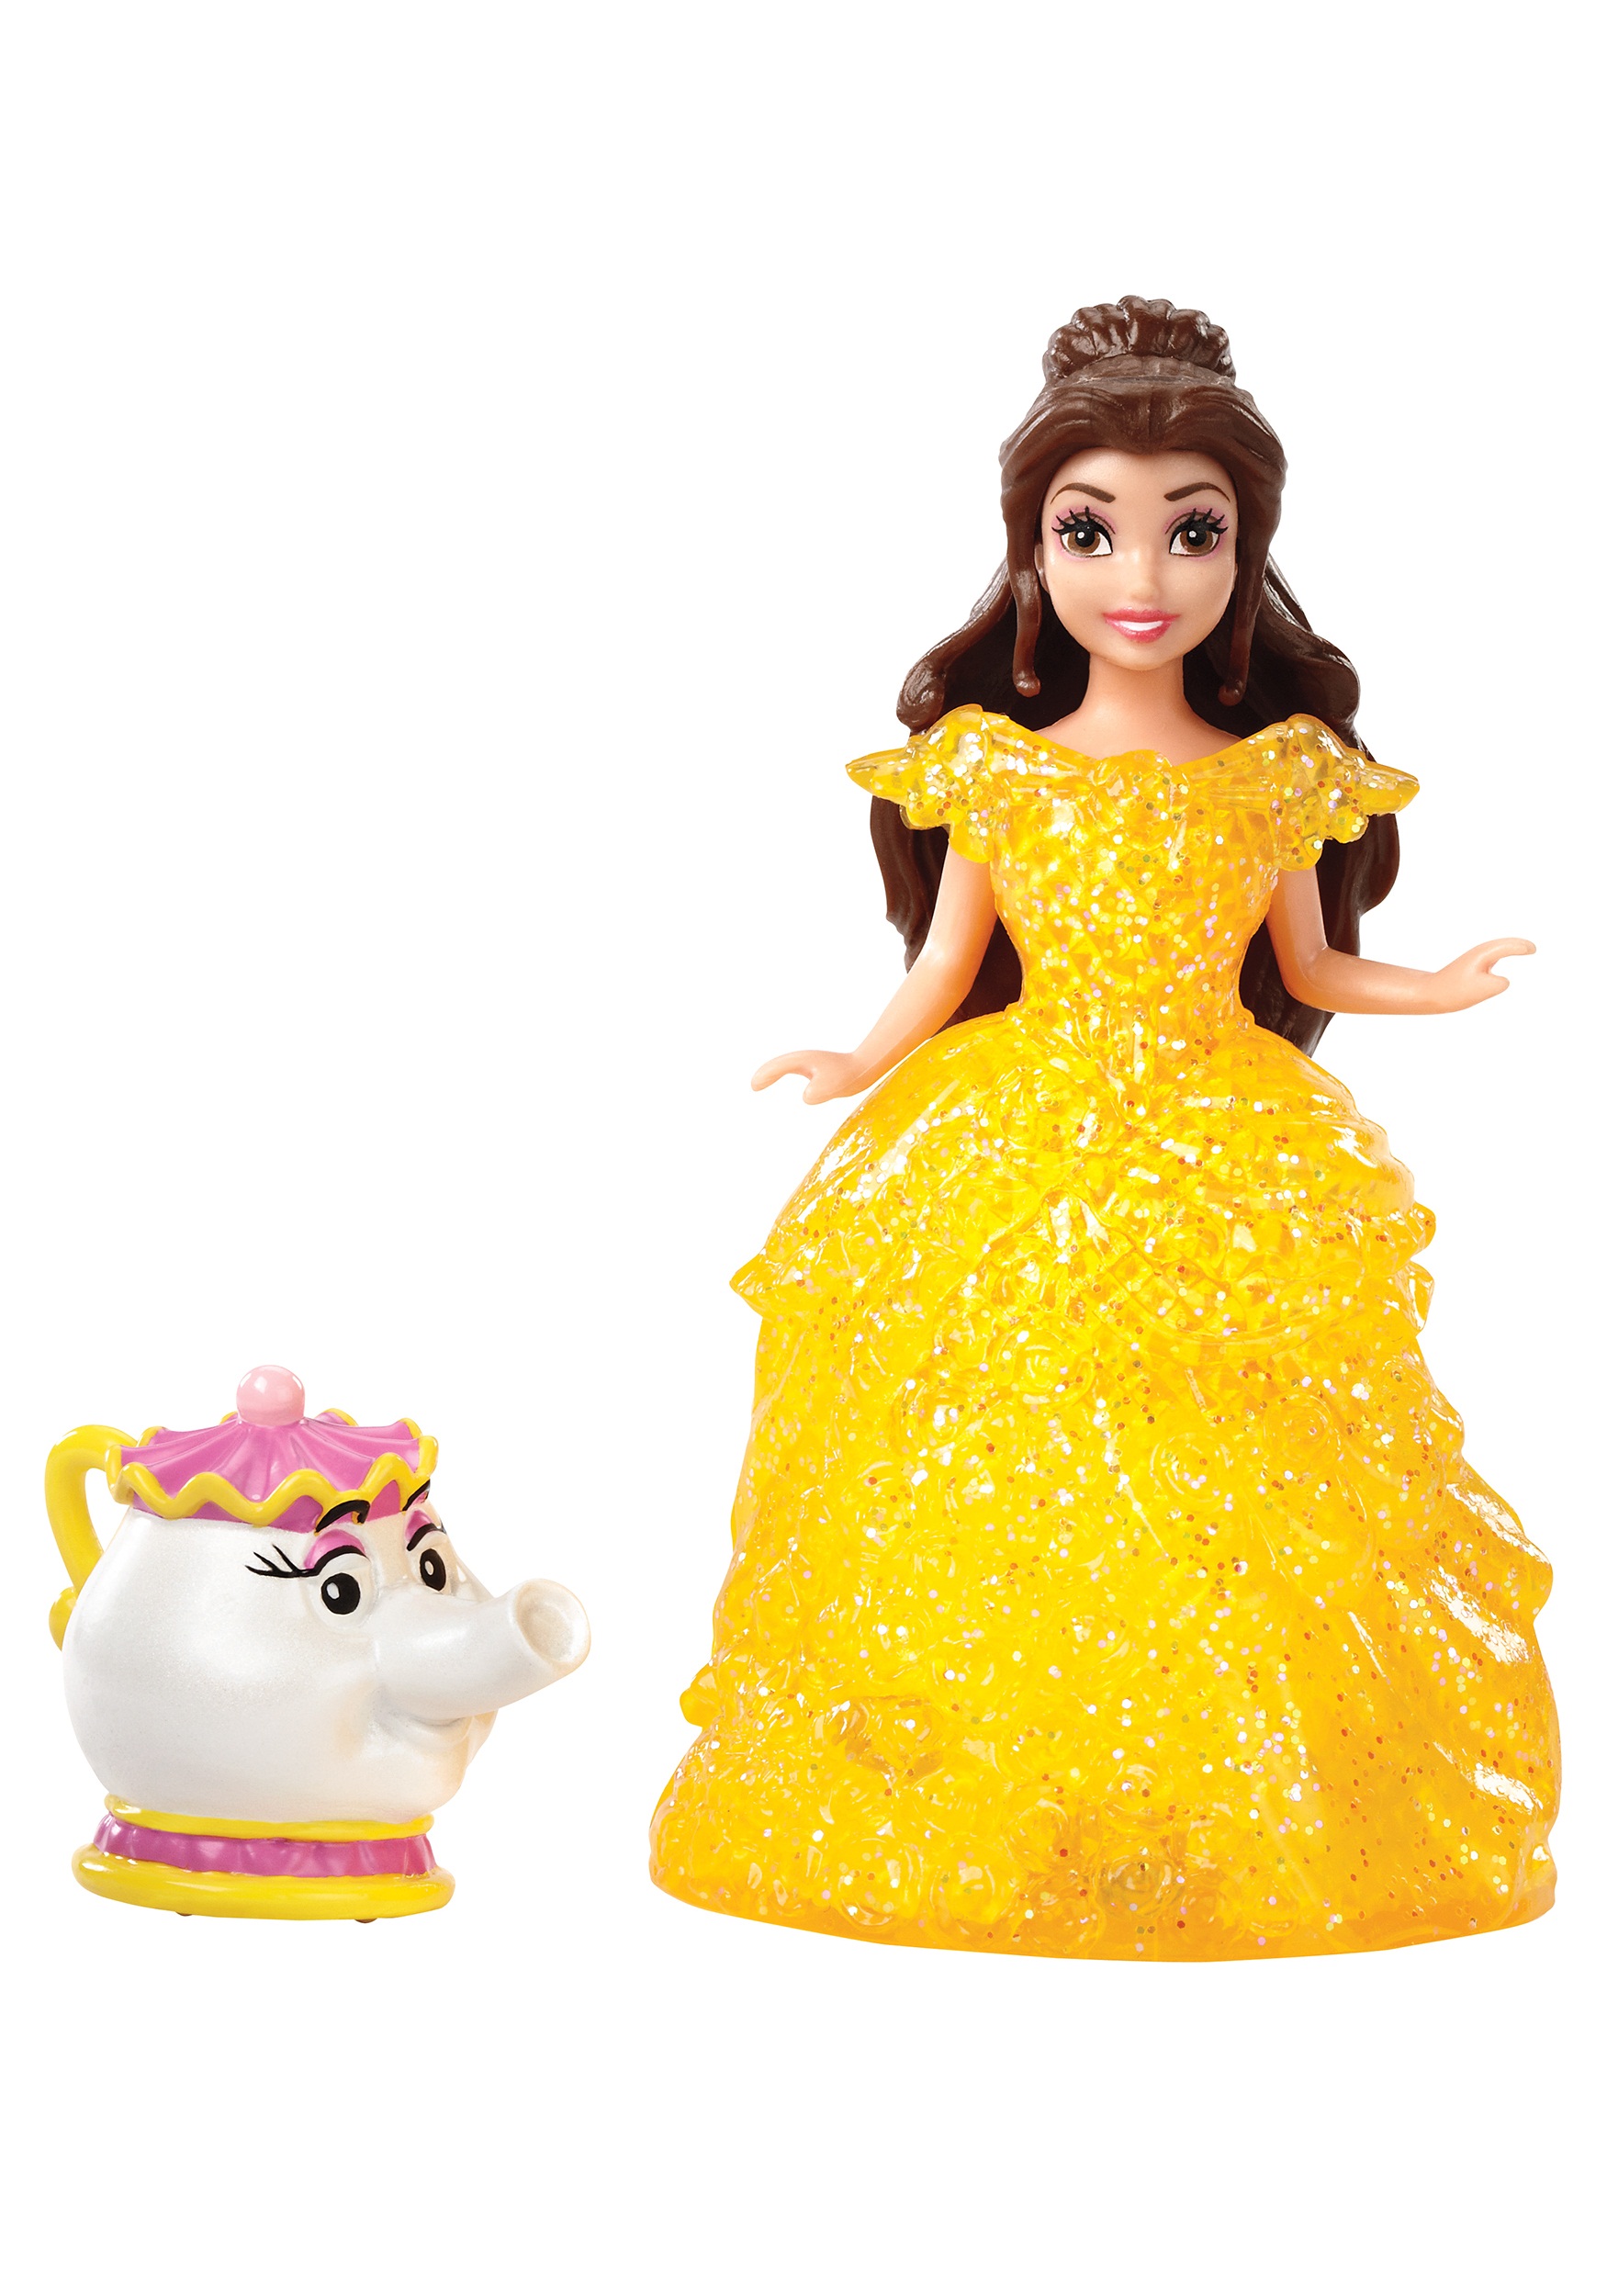 Принцессы дисней купить. Куклы принцессы Диснея Бель. Кукла принцесса Белль Disney. Кукла Дисней Бэль Бель. Disney куклы "принцессы - модницы".